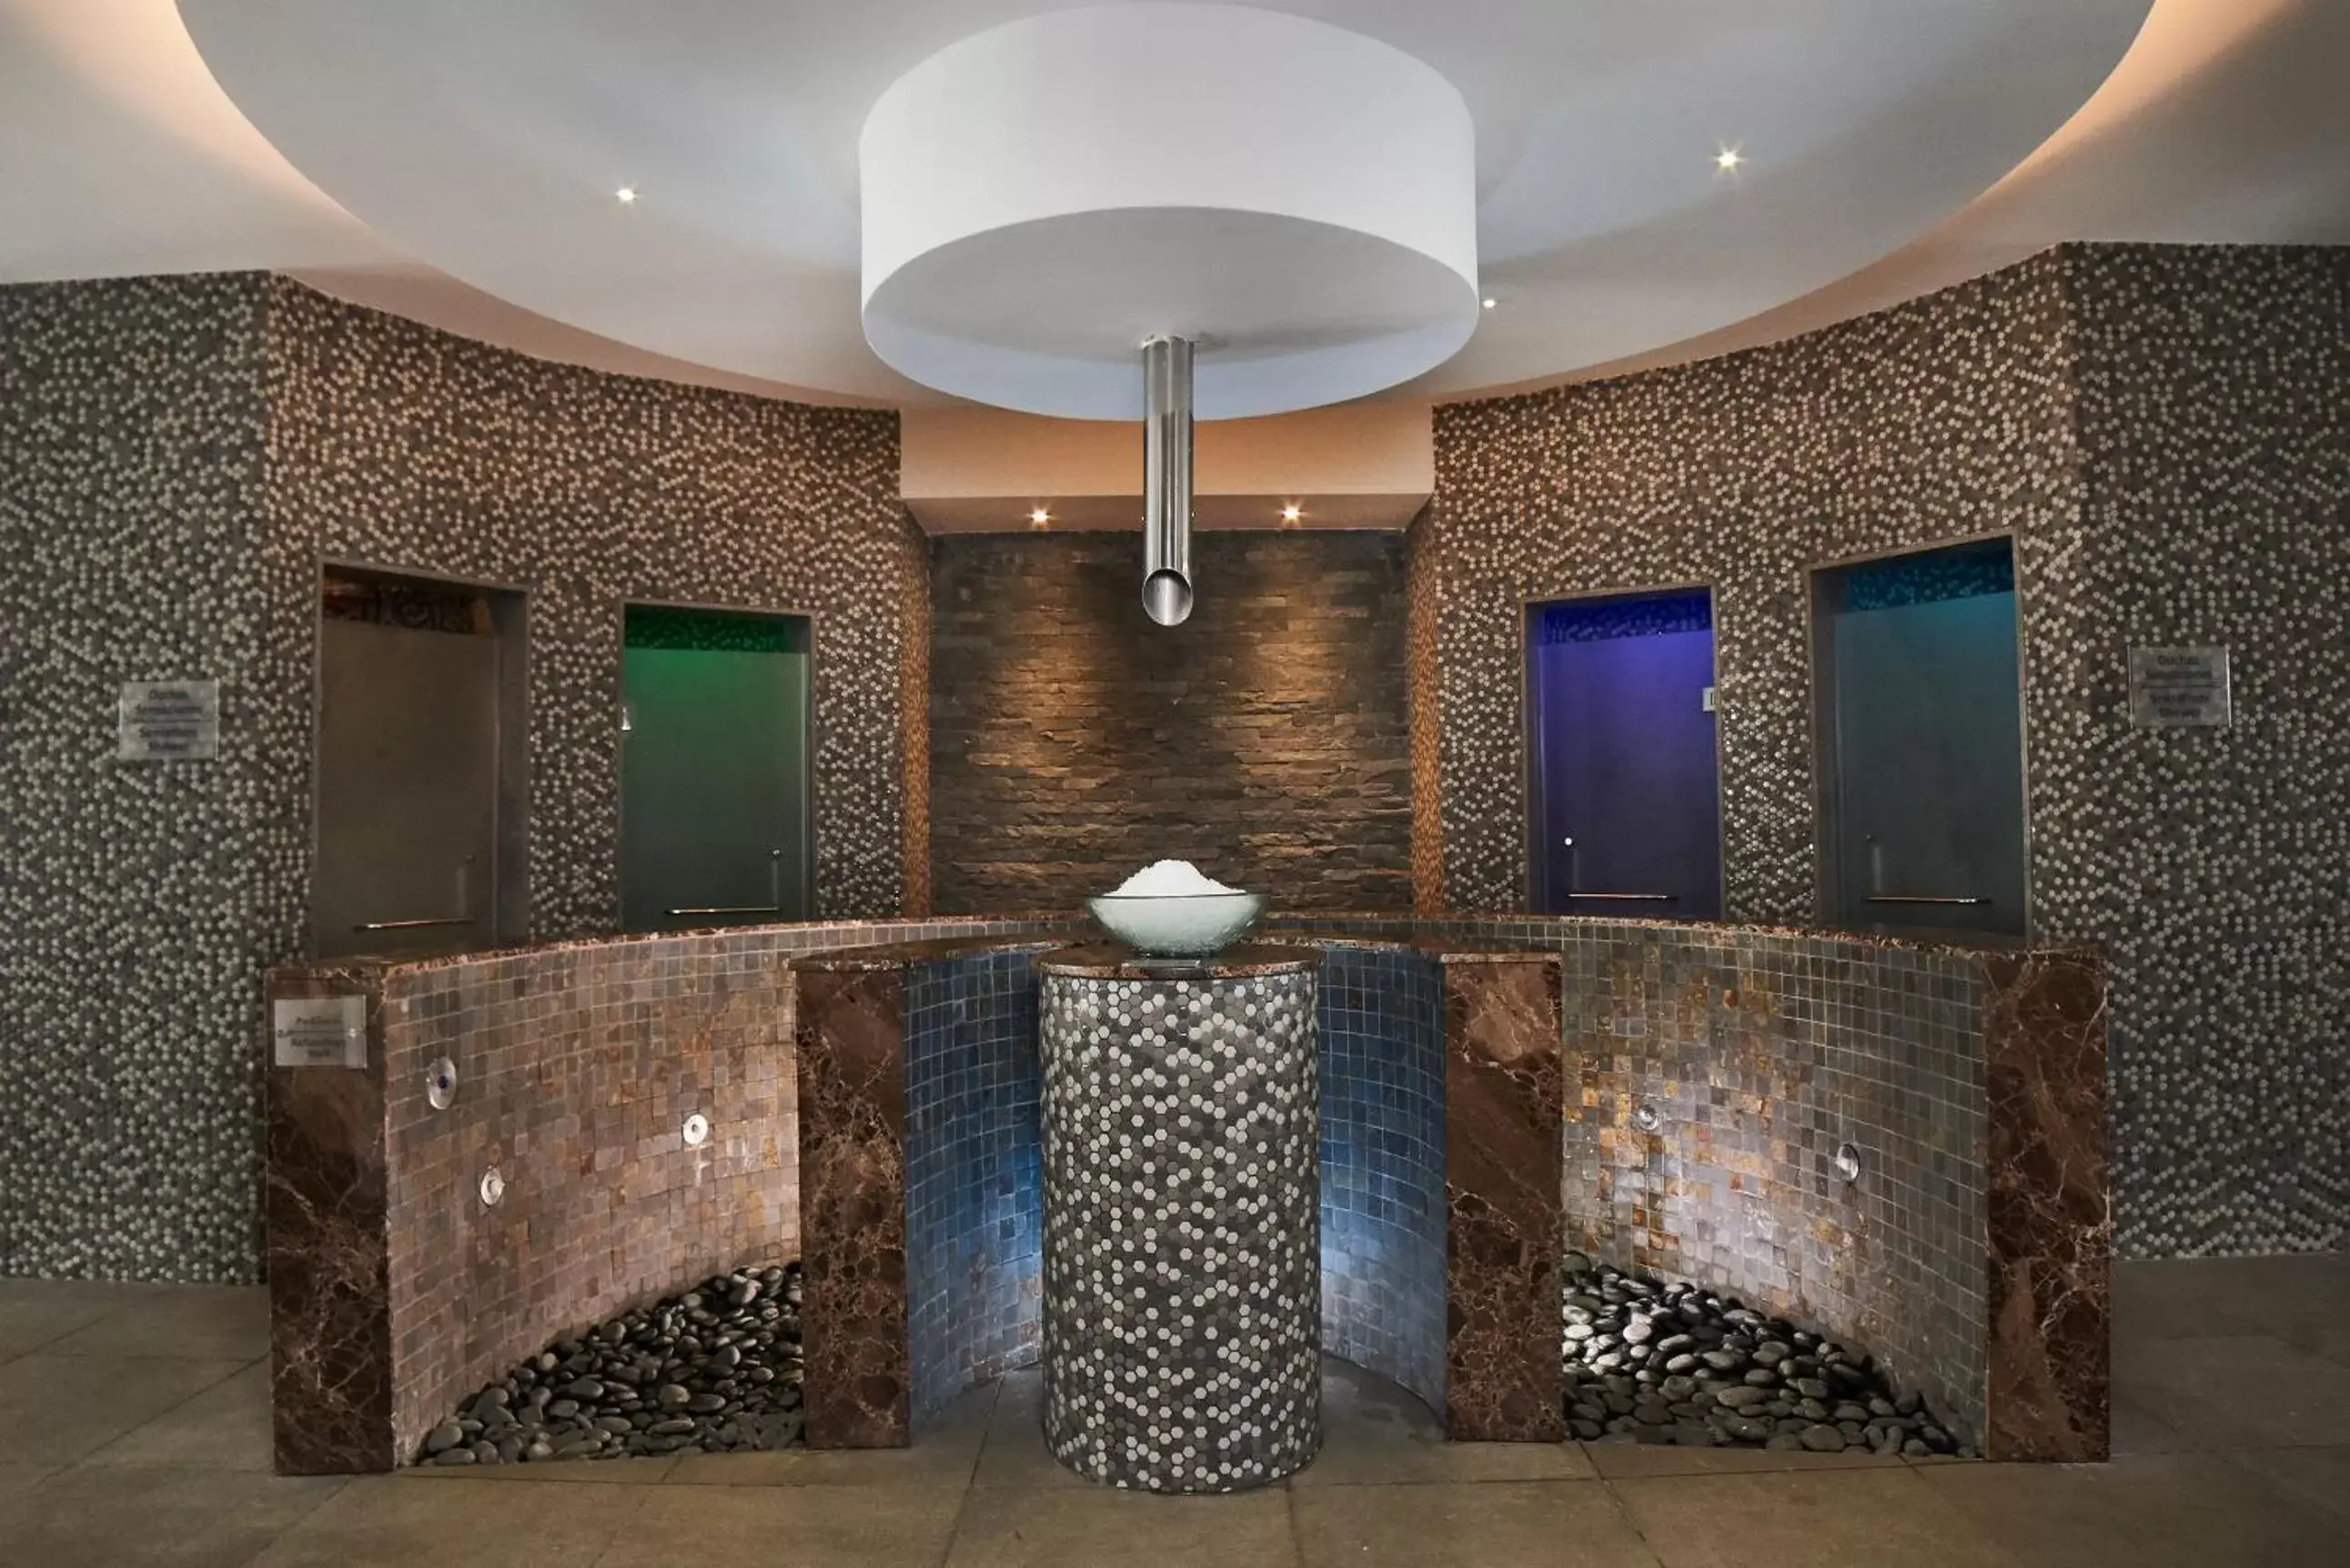 Spa and wellness centre/facilities, Bathroom in Bahia Principe Grand Bavaro - All Inclusive